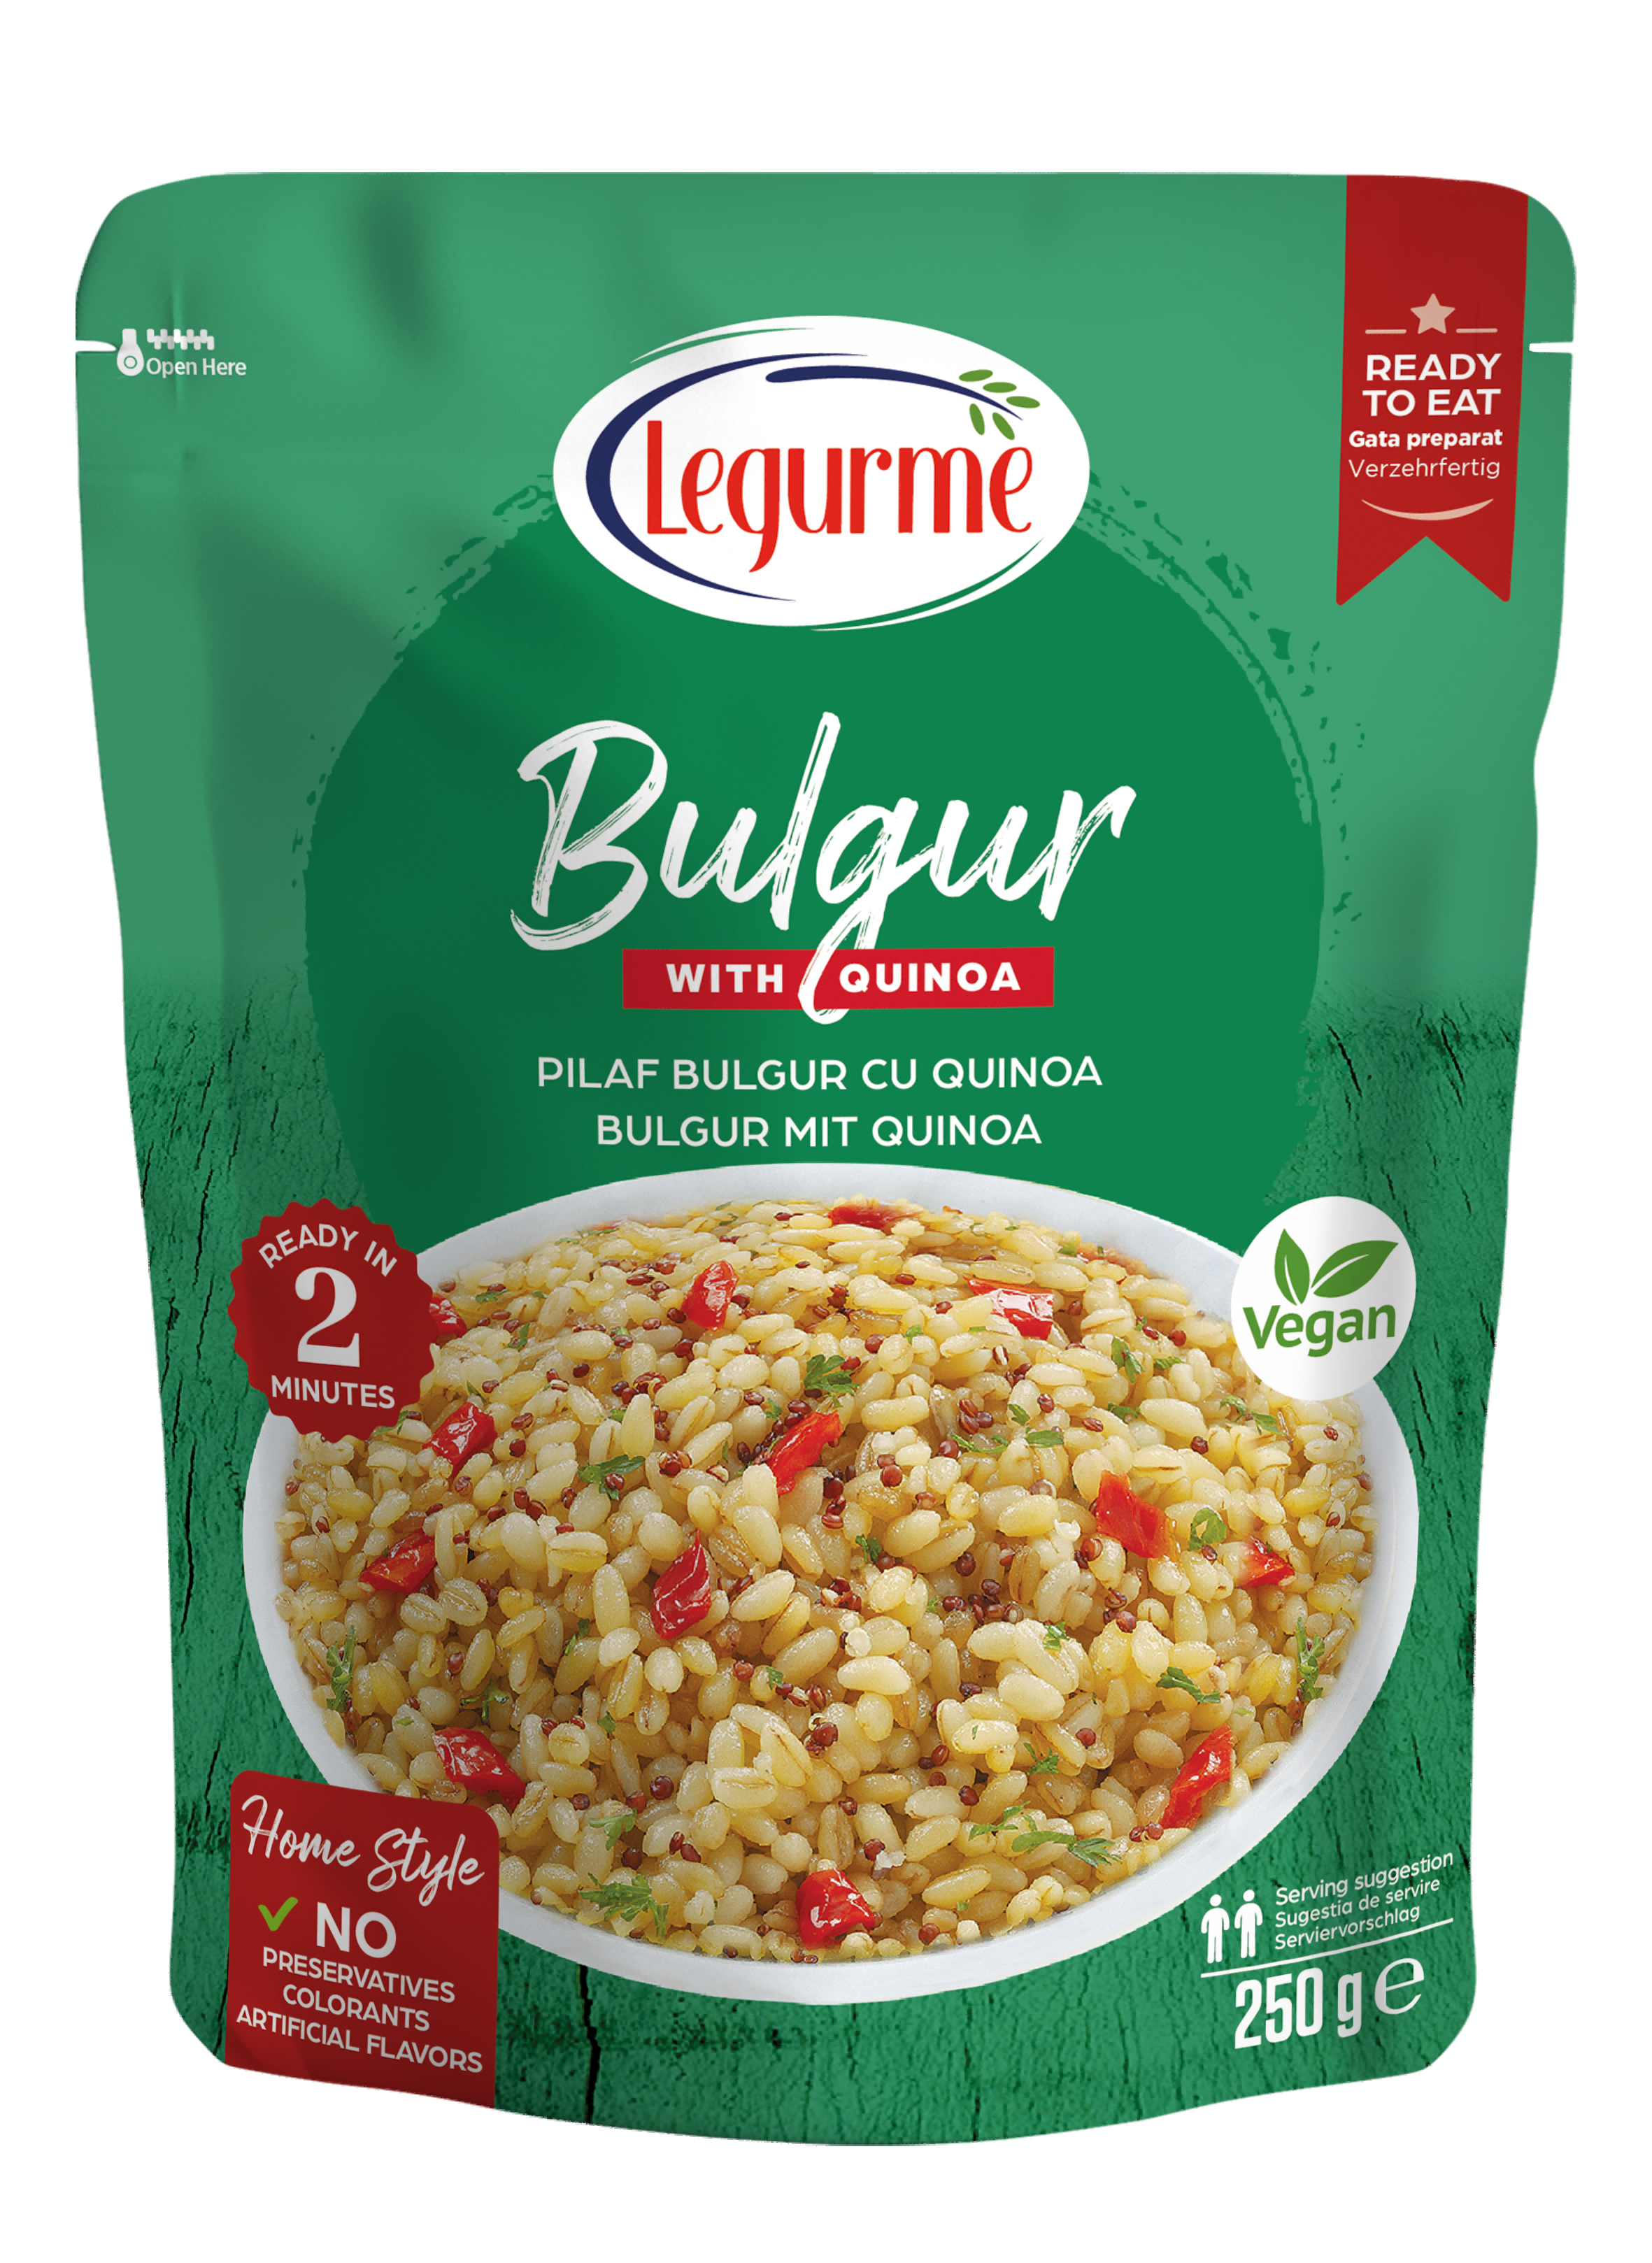 Bulgur with Quinoa